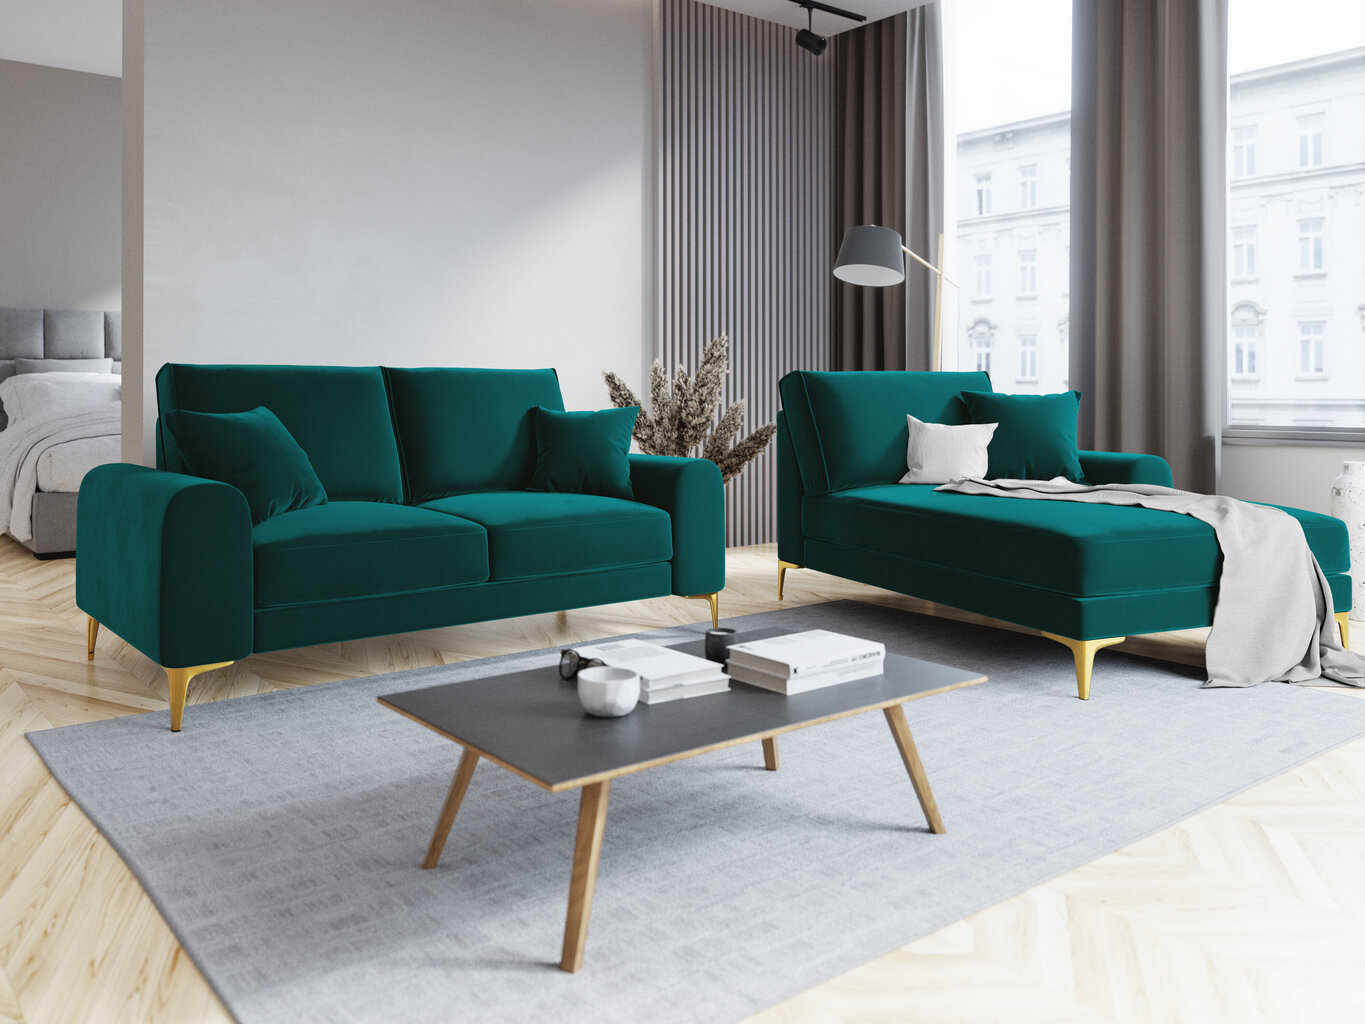 Dvivietė sofa Mazzini Sofas Madara, veliūras, šviesiai žalia/auksinės spalvos kaina ir informacija | Sofos | pigu.lt